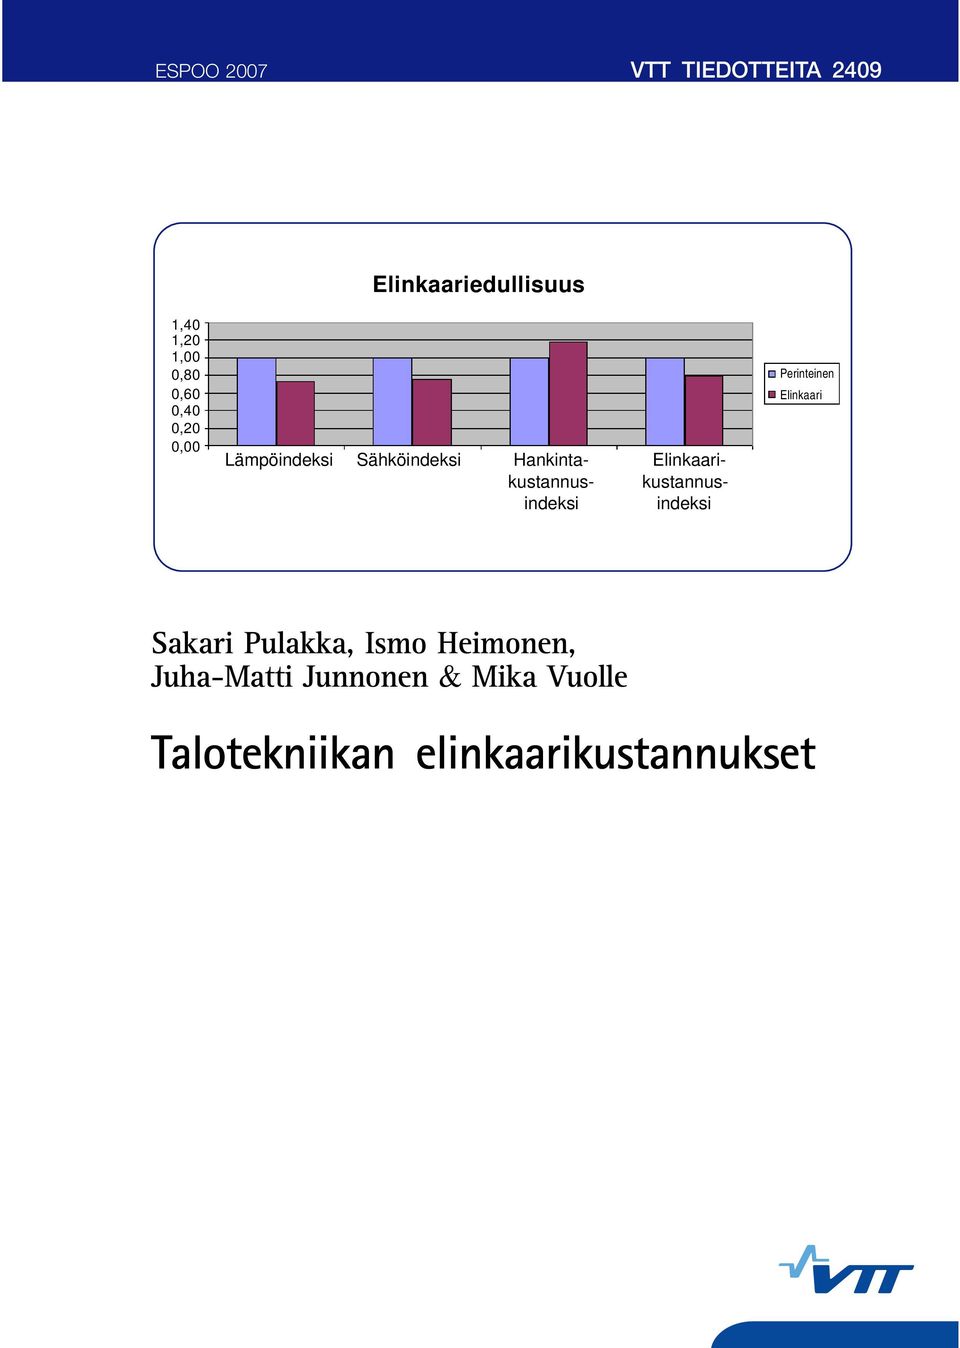 Elinkaarikustannus- kustannusindeksi indeksi Perinteinen Elinkaari Sakari